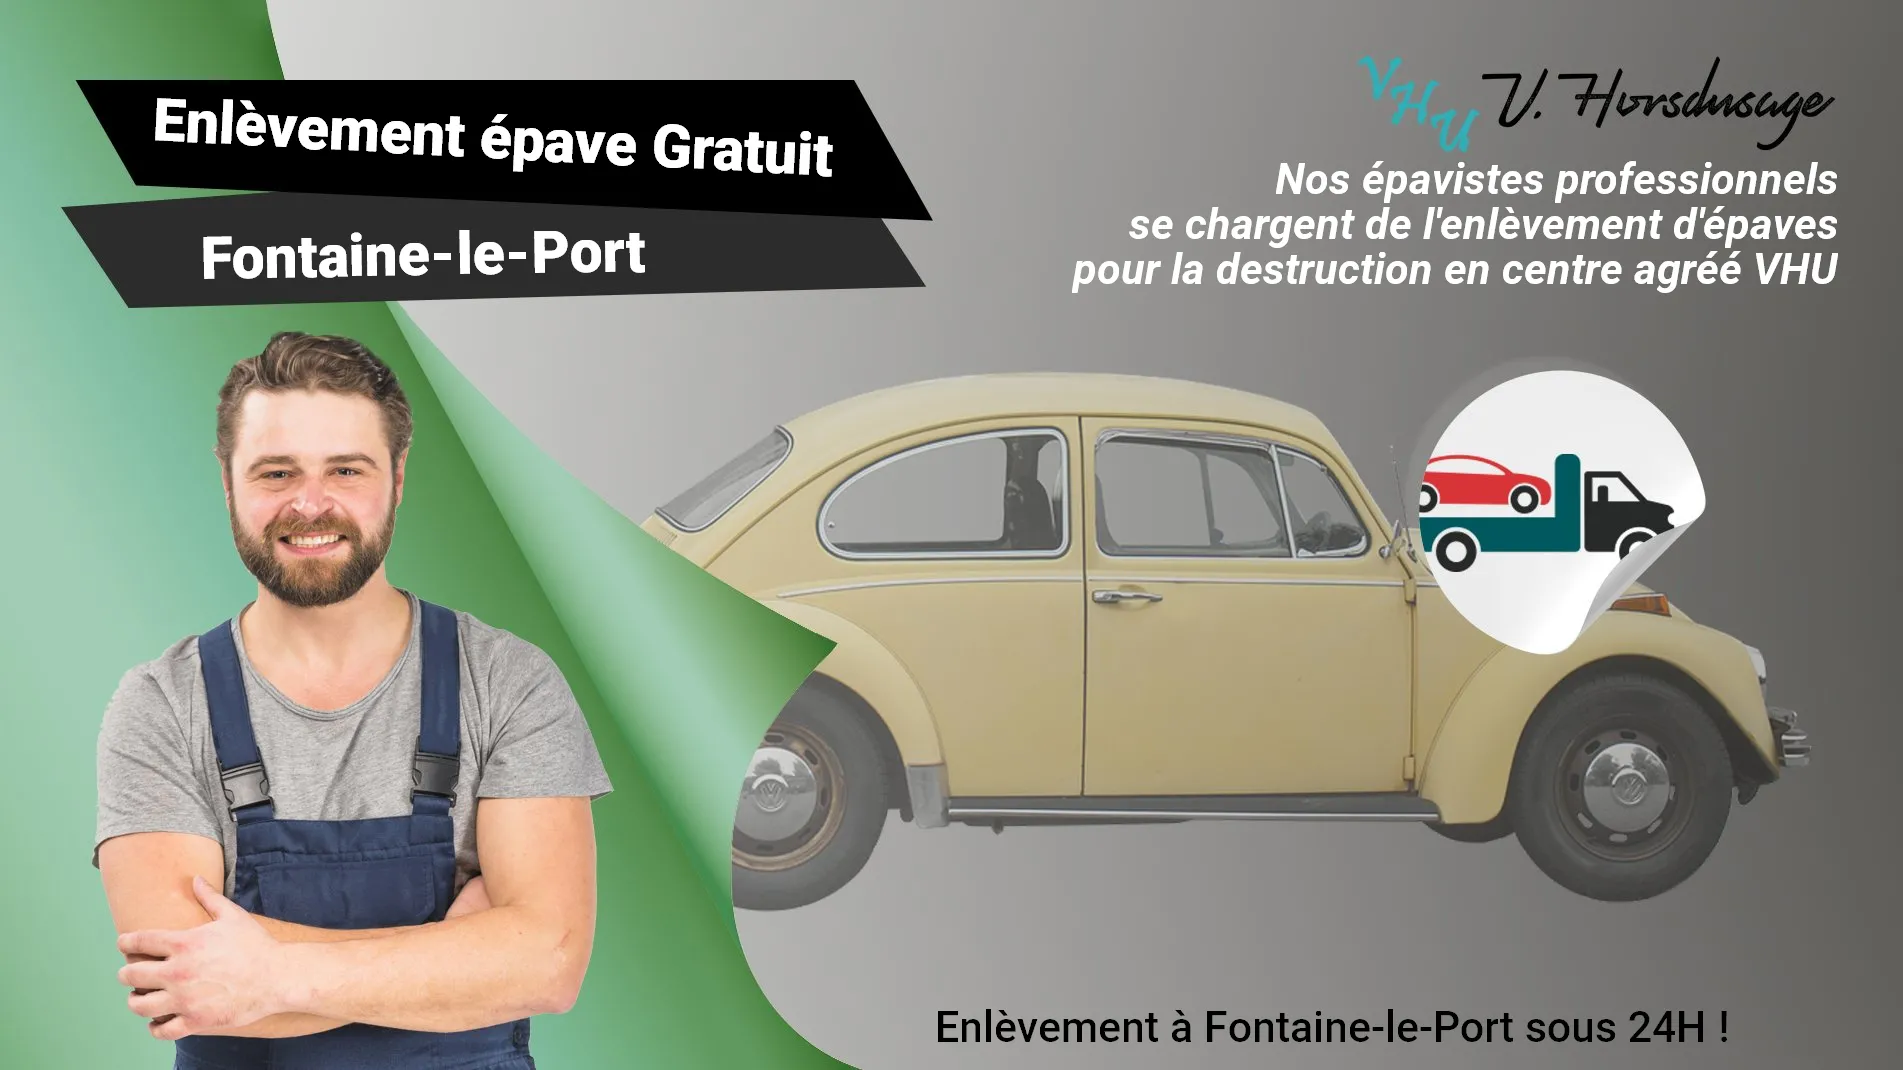 Pour un enlèvement gratuit à Fontaine-le-Port, contactez nos épavistes agréé VHU